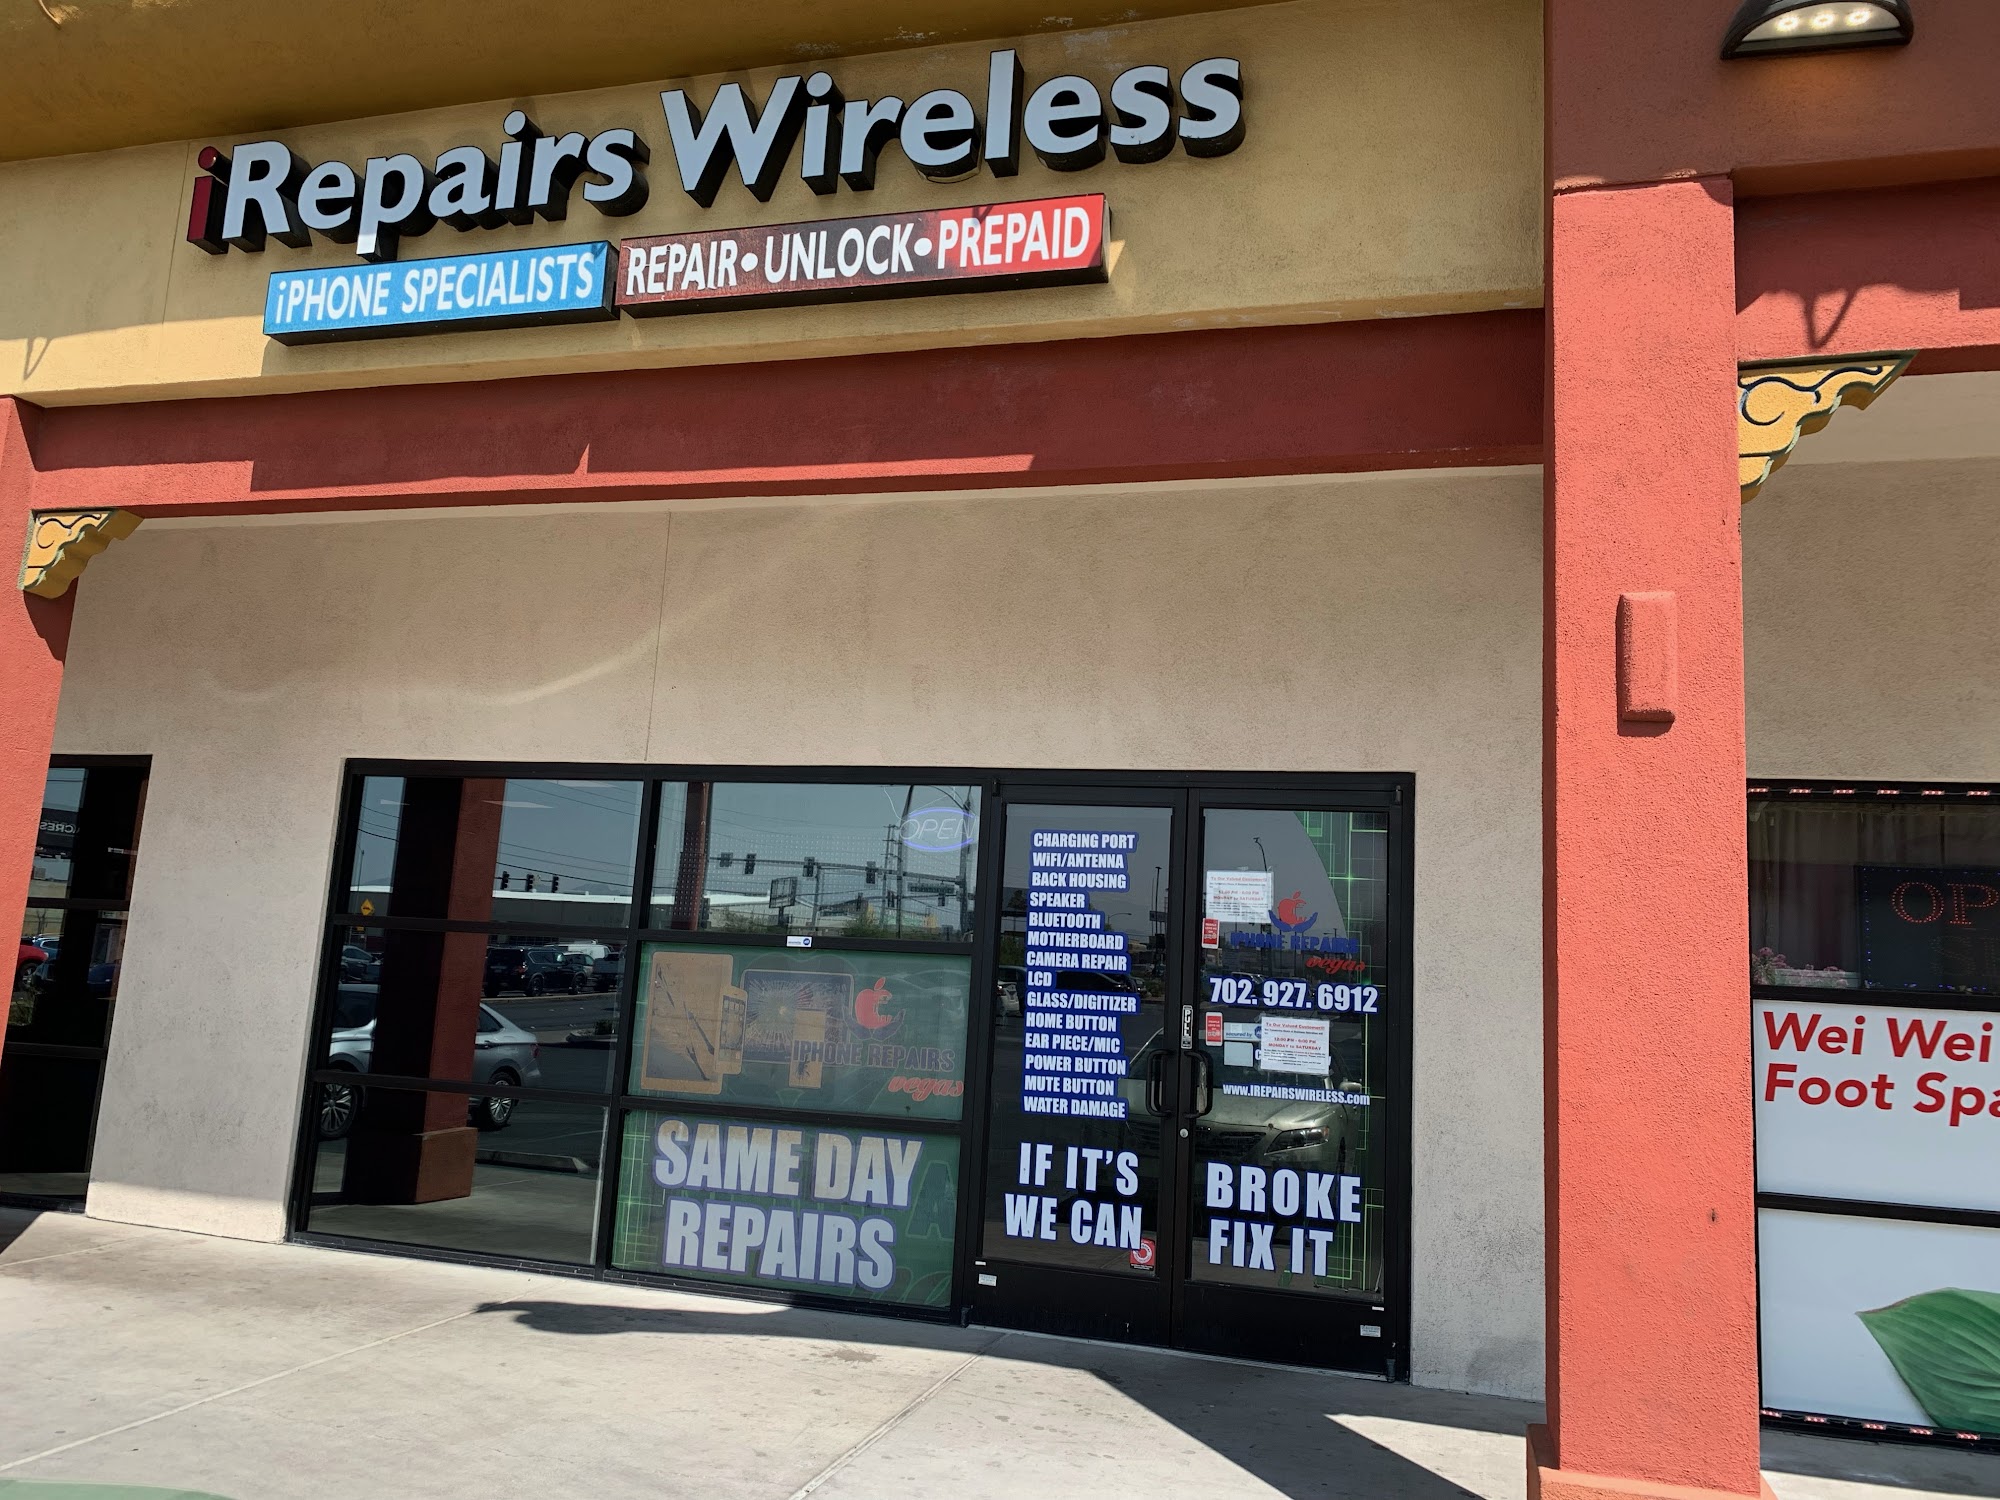 FoneStar Repair: iRepairs Wireless